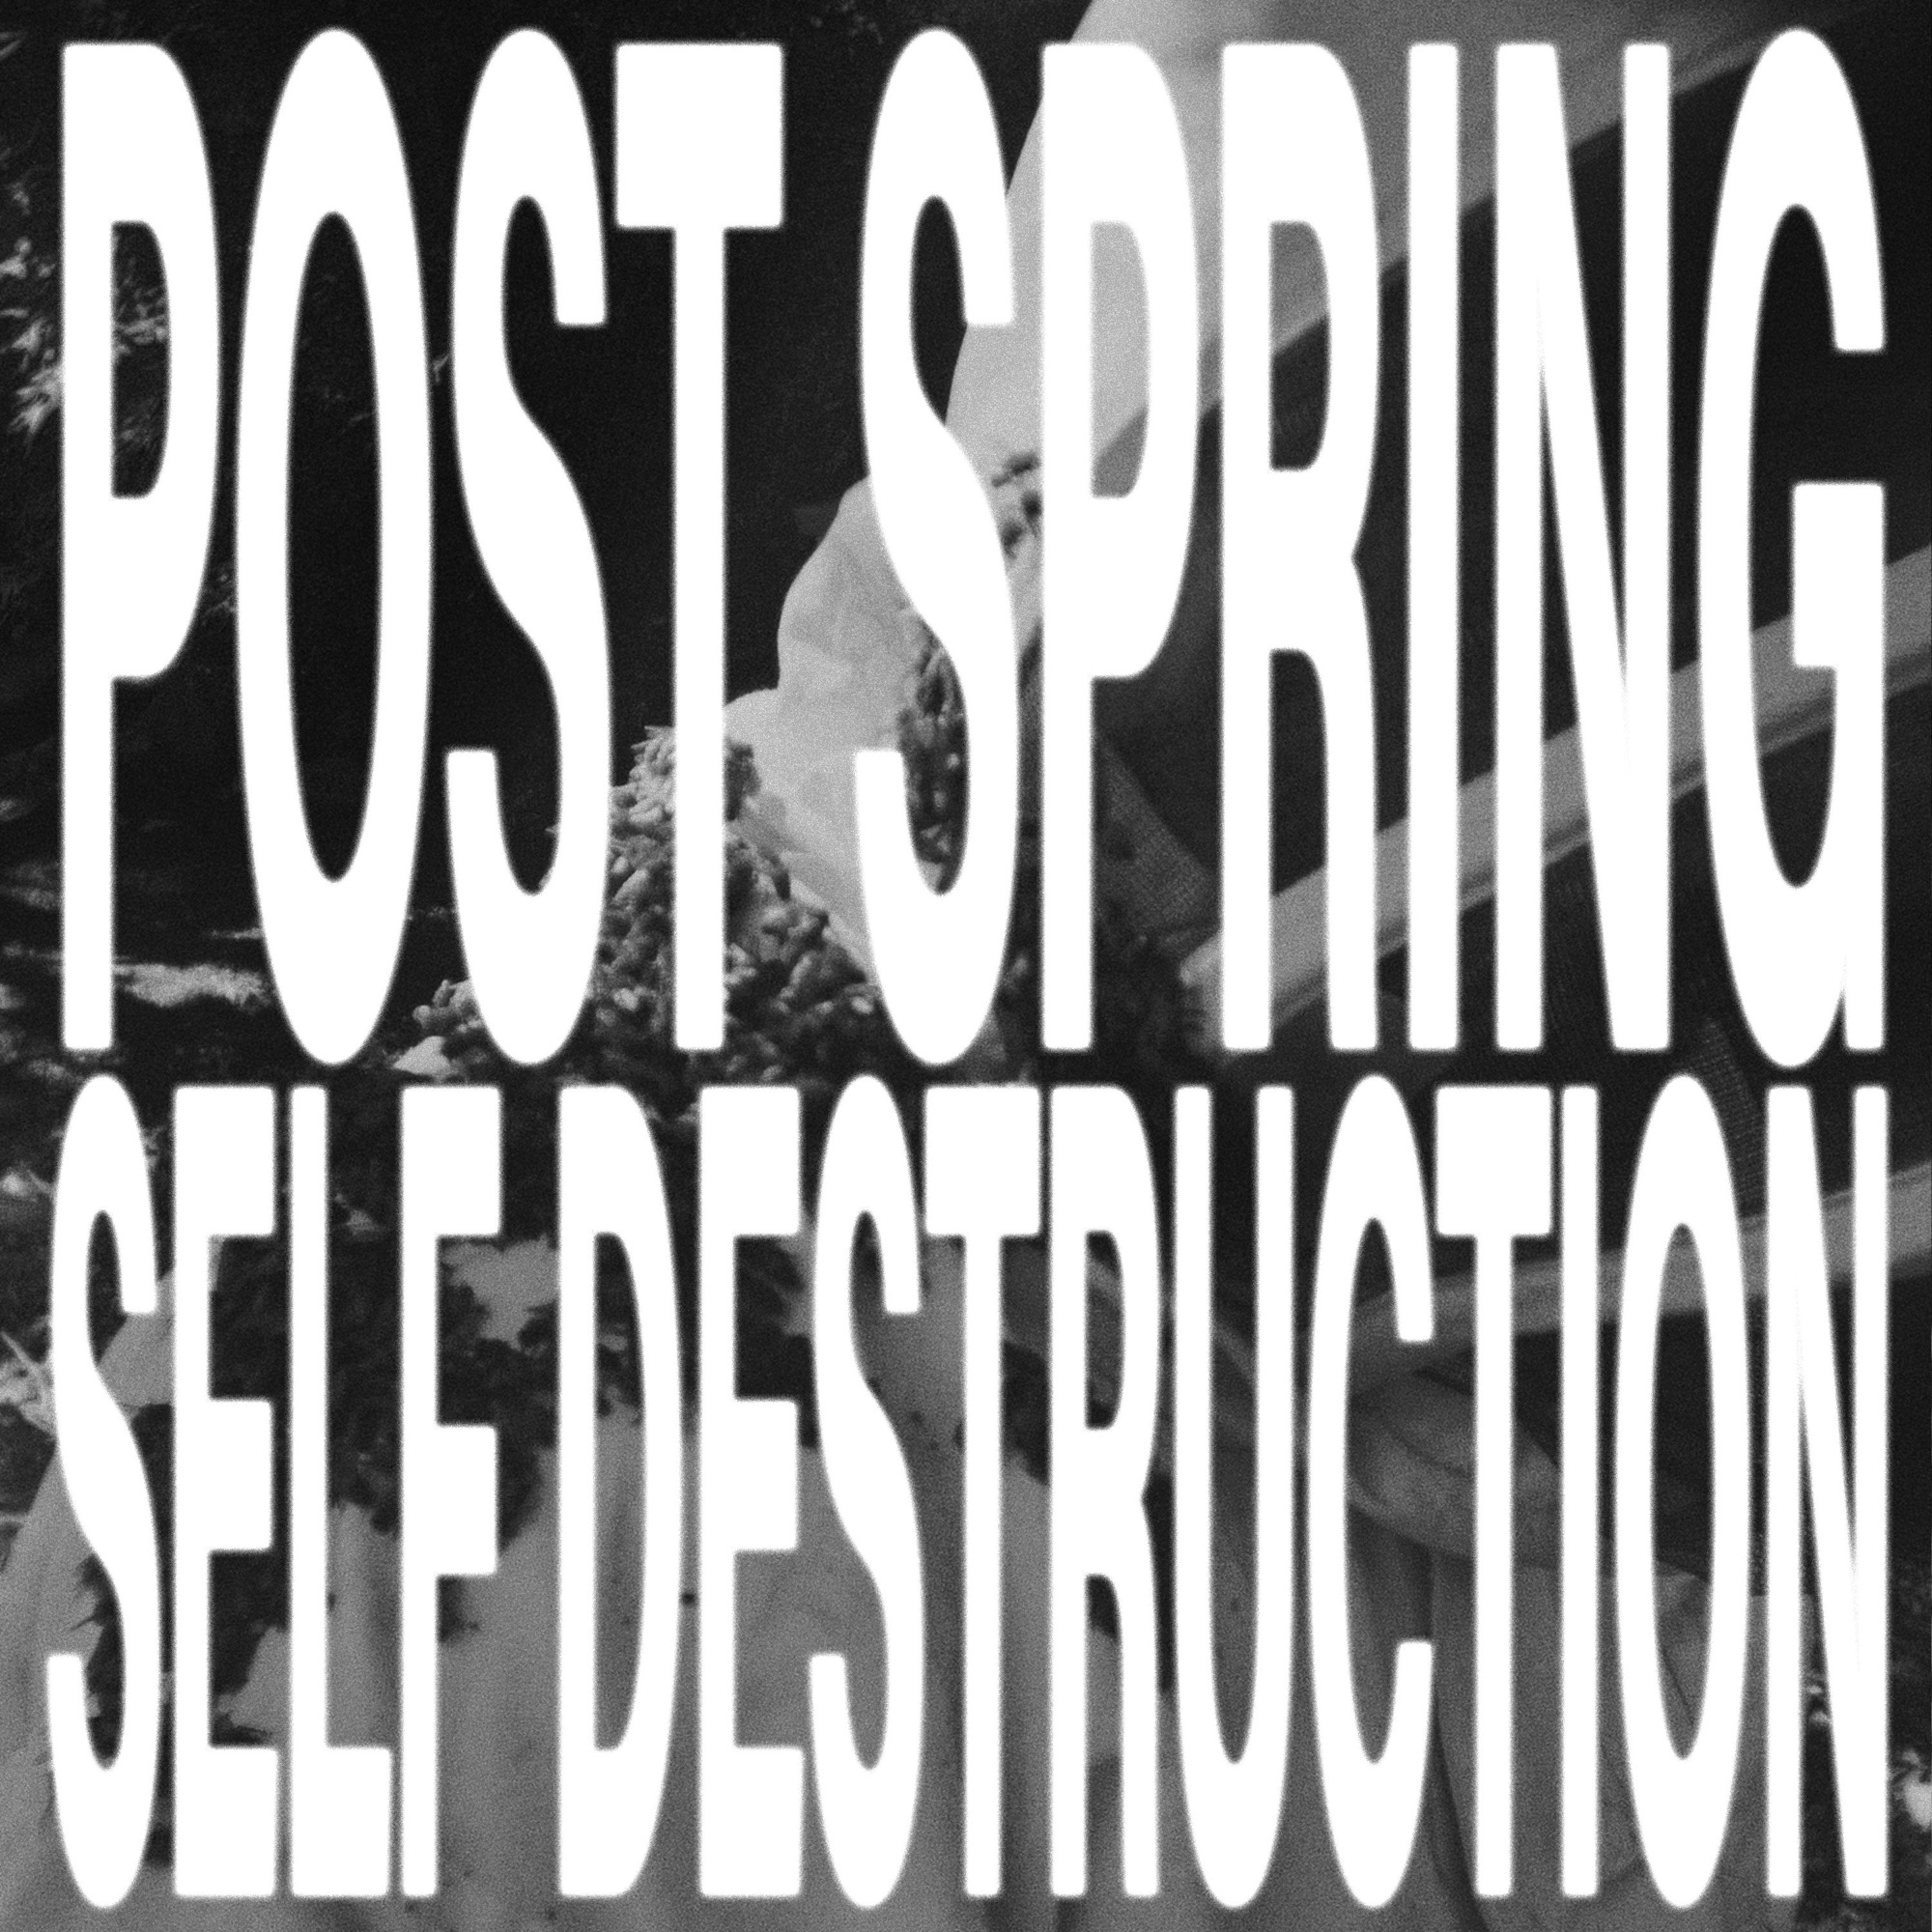 aldn post spring self destruction cover artwork